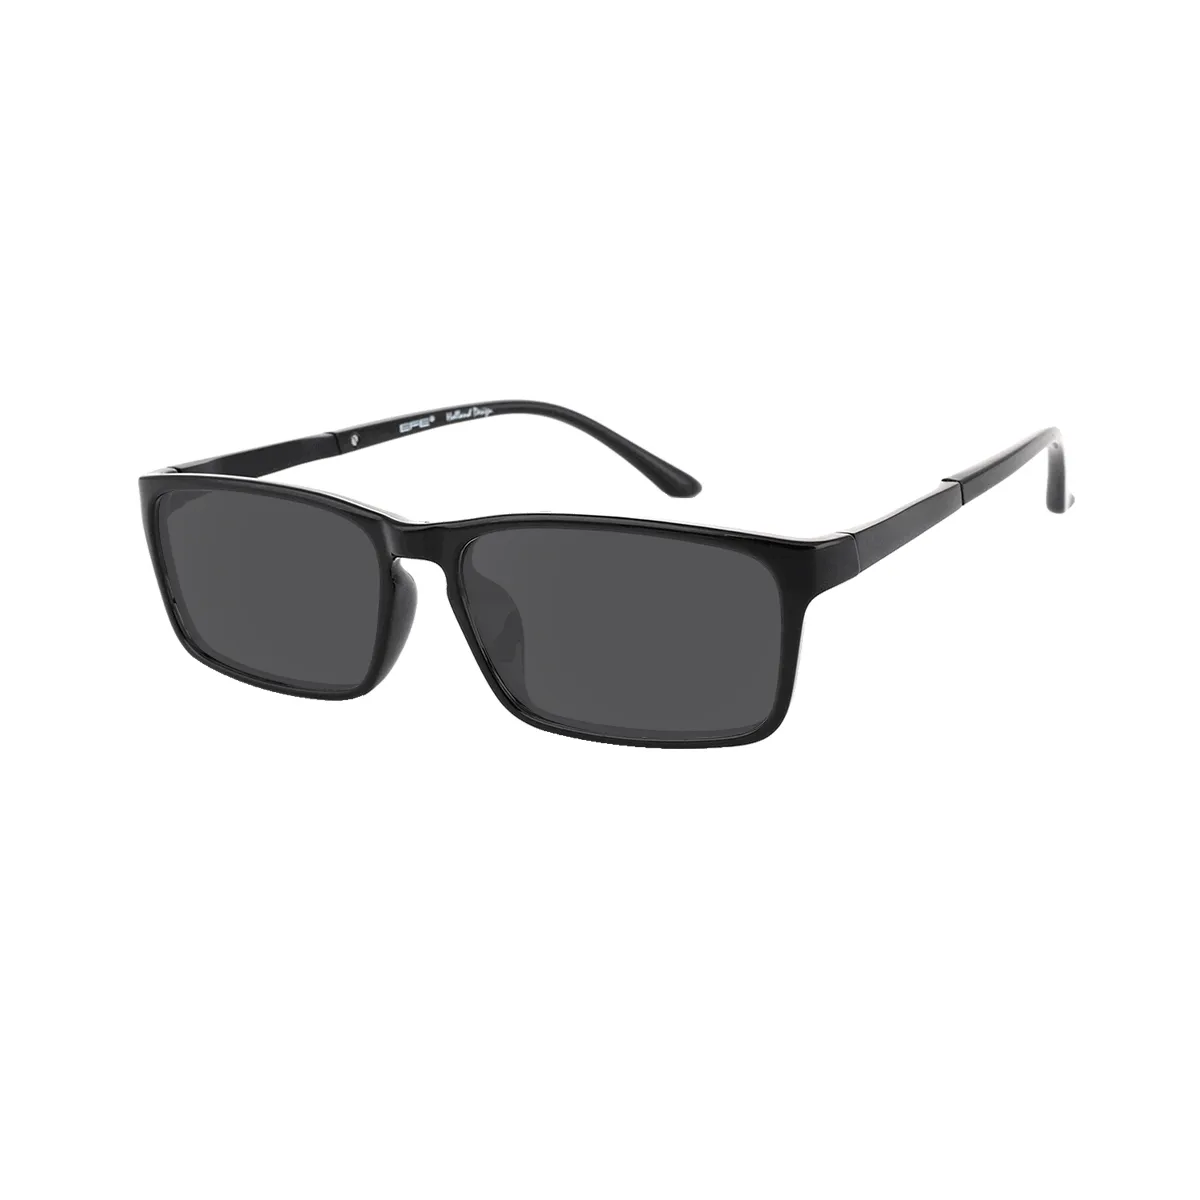 Toney - Rectangle Black Sunglasses for Men & Women